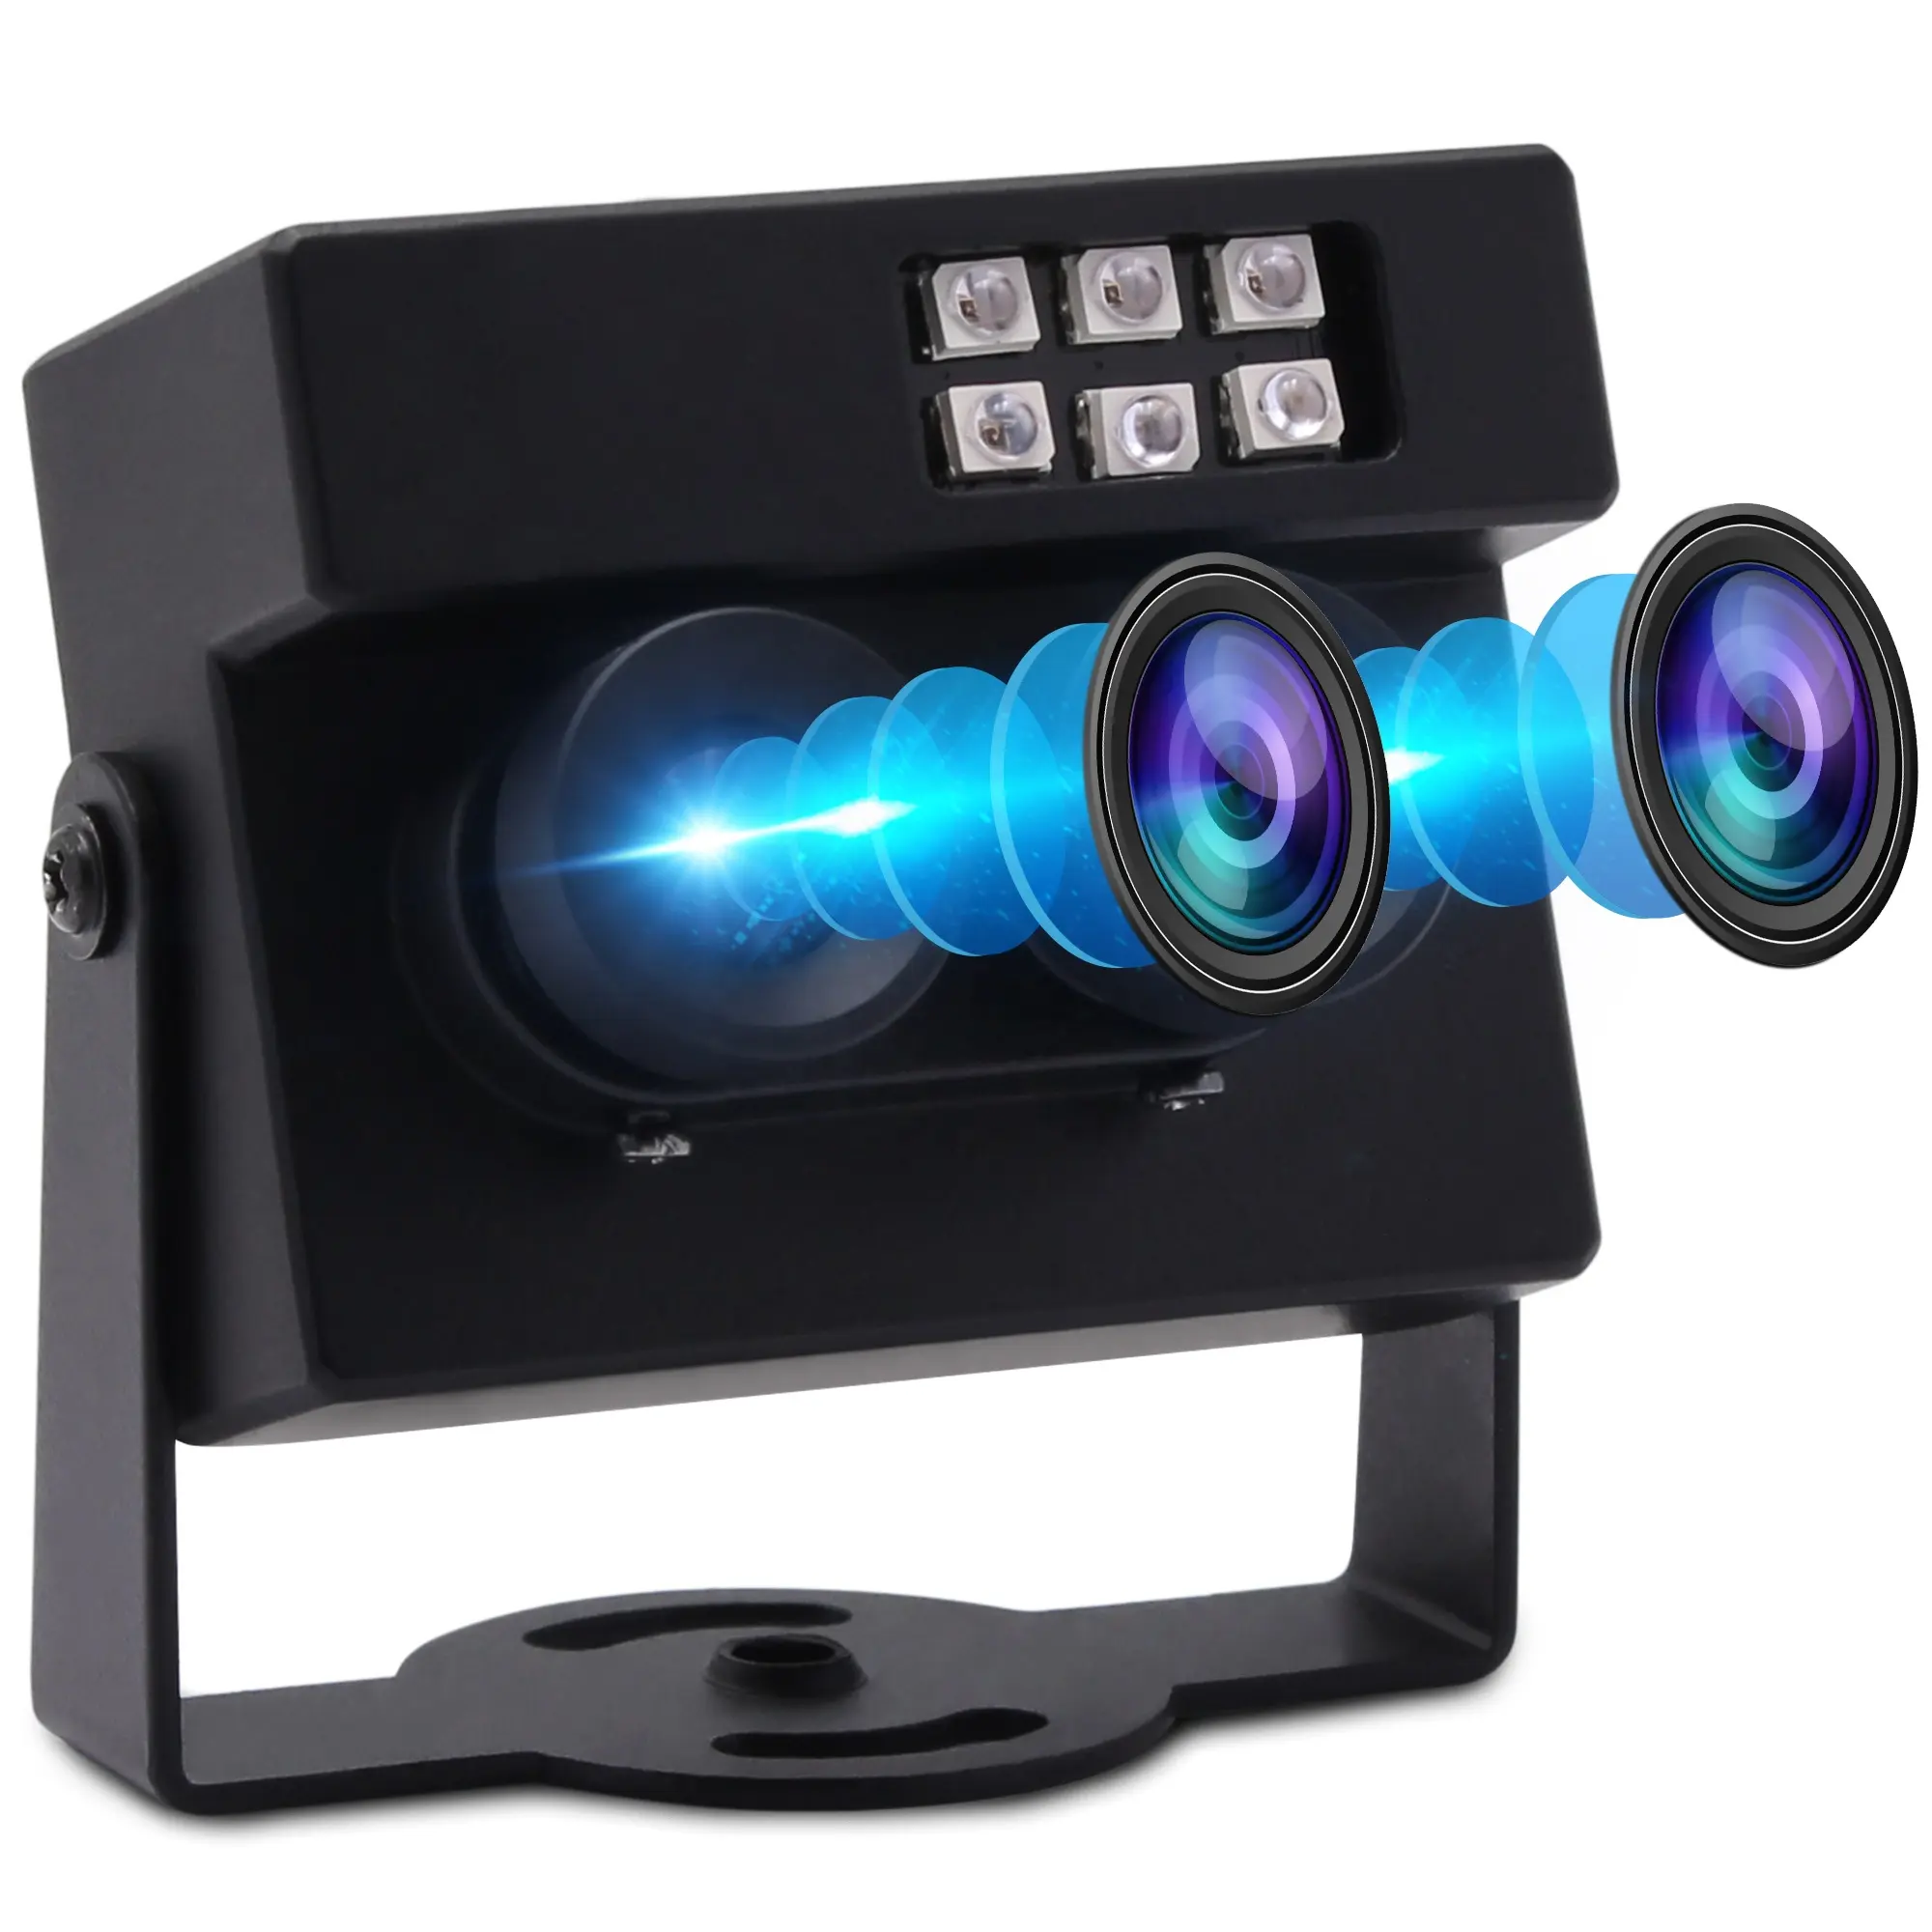 ELP Ống Kính Kép 2MP 1080P Webcam Camera Âm Thanh Nổi 3D RGB & B/W Để Nhận Diện Khuôn Mặt & Phát Hiện Sinh Học